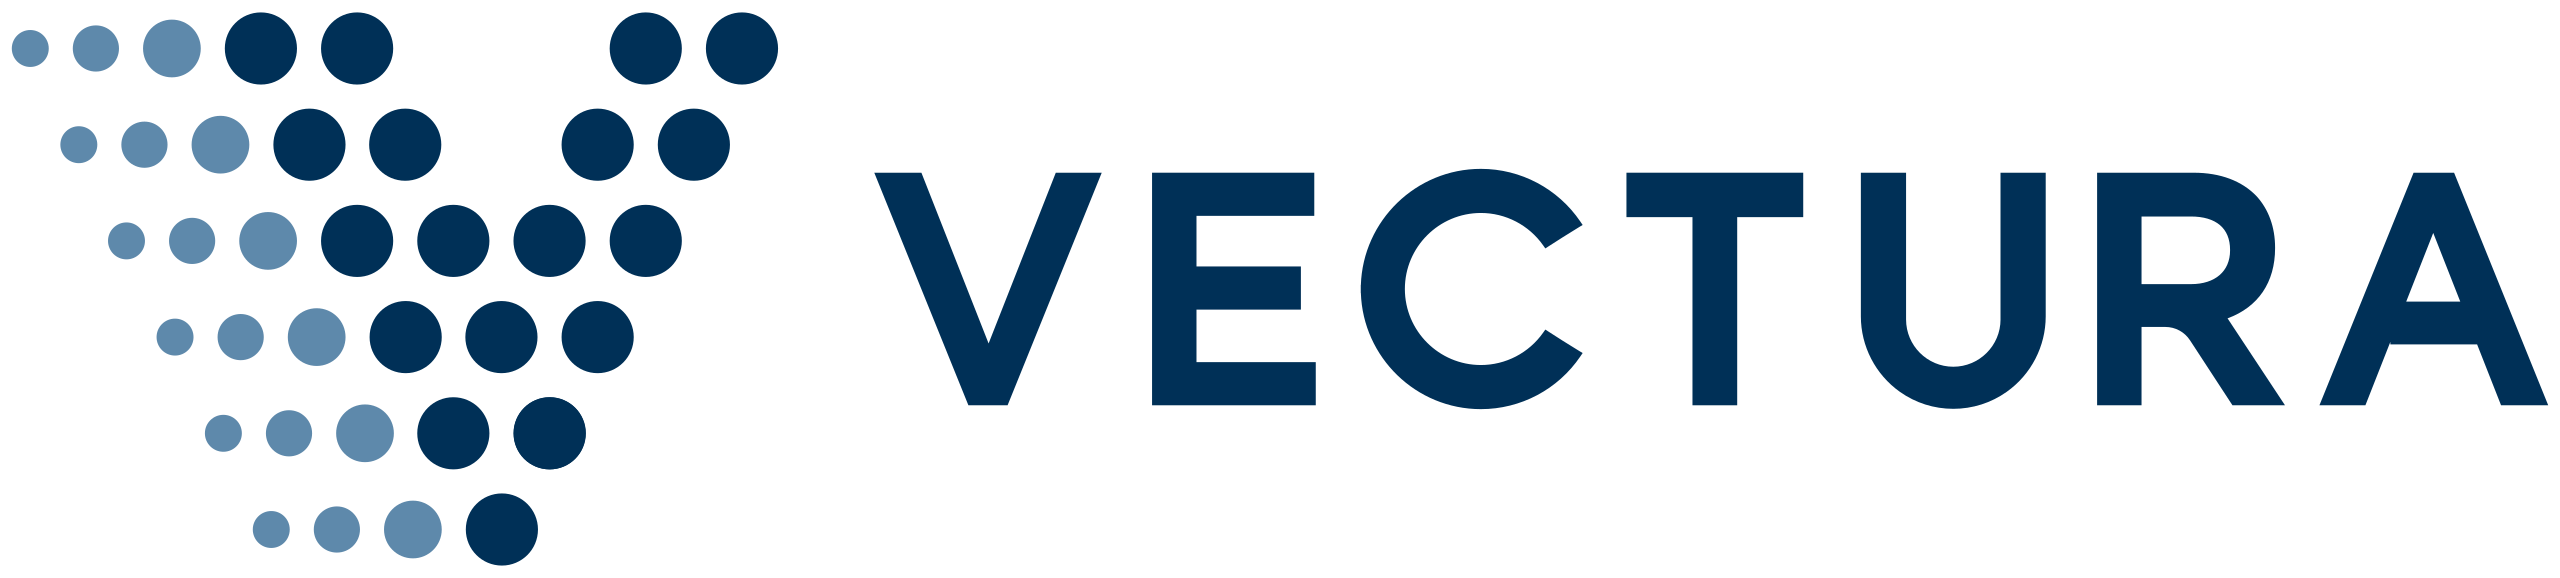 Vectura_Group_logo